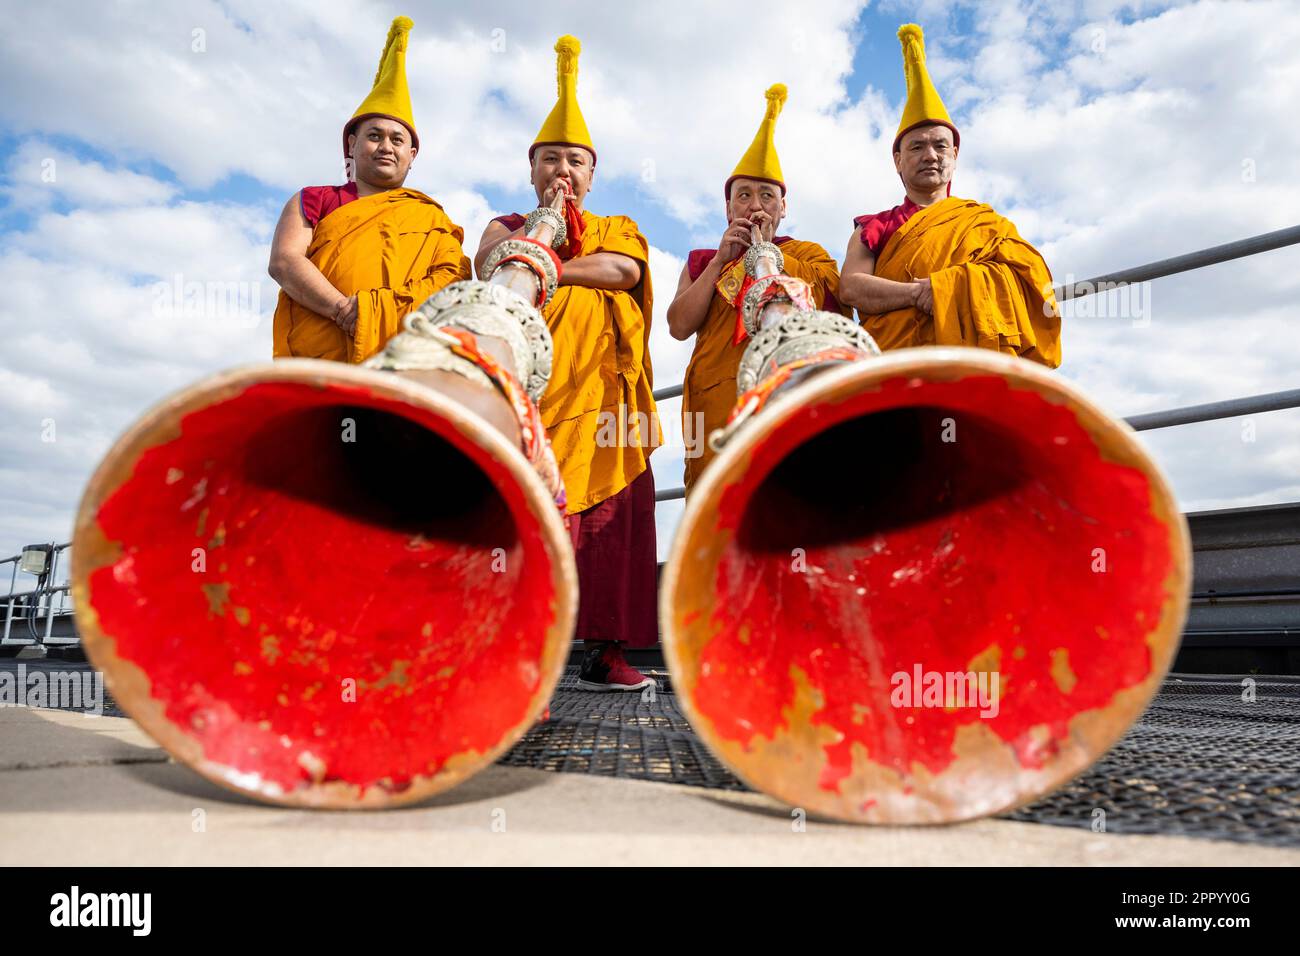 Londres, Royaume-Uni. 25 avril 2023. Les moines bouddhistes tibétains du monastère de Tashi Lhunpo se produisent avec des instruments tantriques de cérémonie (longues cornes) à Kings place, près de la Croix du roi, avant le festival Songlines Encounters, le 24 mai. Fondé par le premier Dalaï Lama en 1447 à Shigatse, au Tibet central, Tashi Lhunpo est l'un des monastères les plus importants de la tradition bouddhiste tibétaine et est maintenant rétabli en exil en Inde. Credit: Stephen Chung / EMPICS / Alamy Live News Banque D'Images